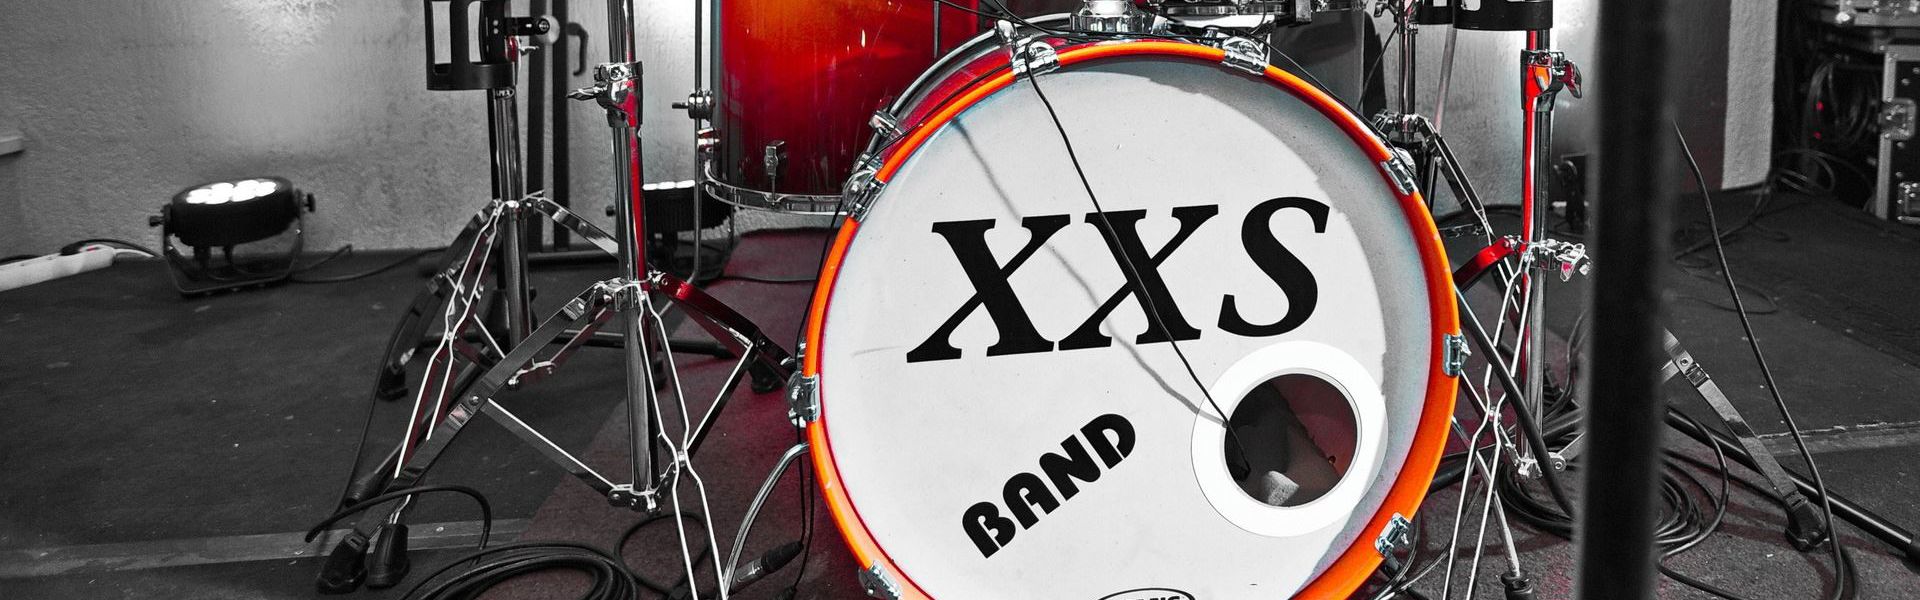 XXS band